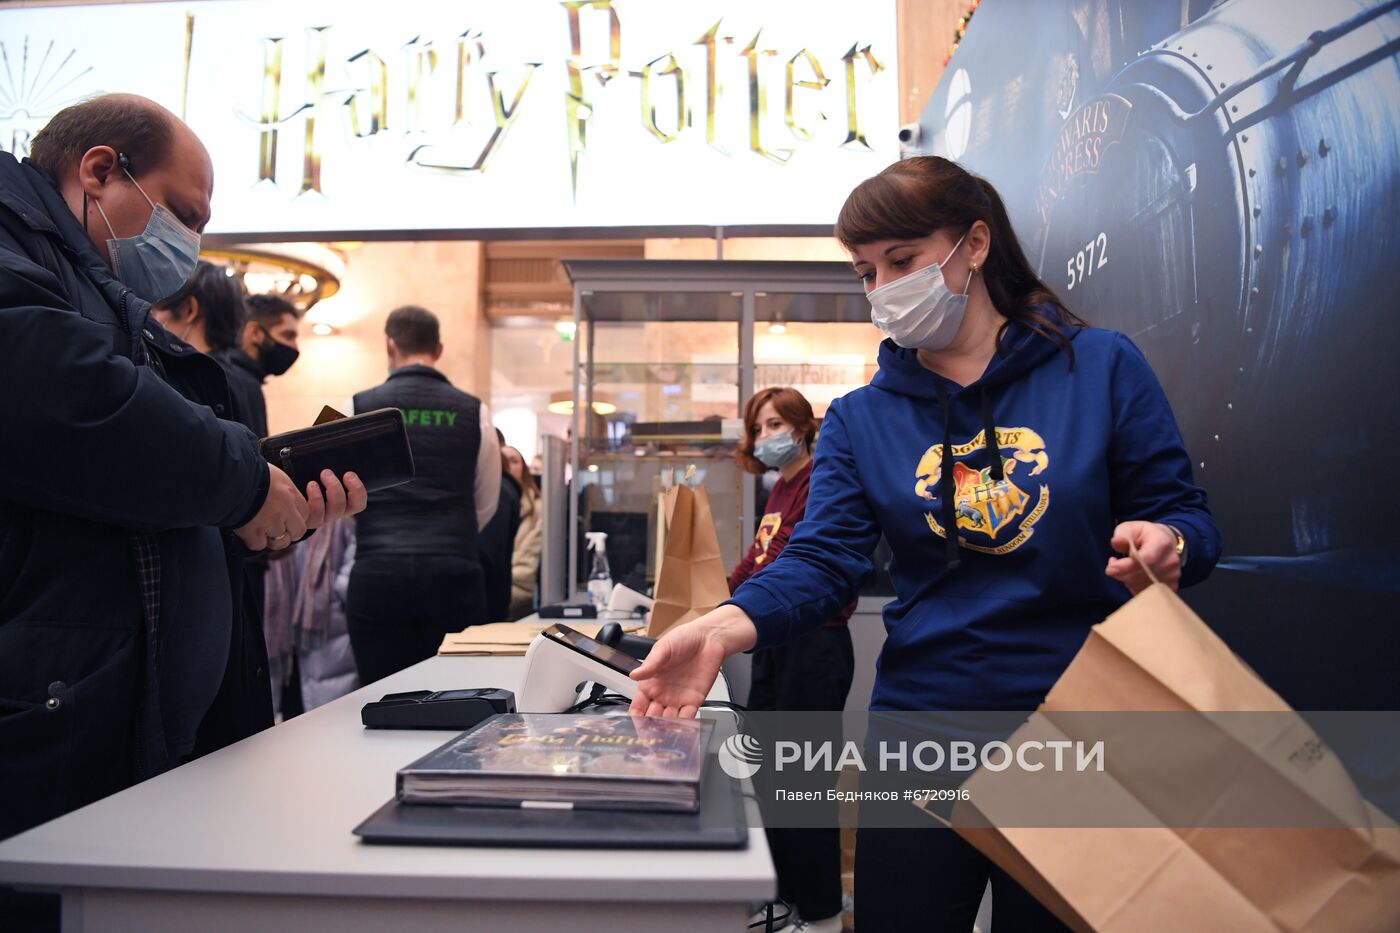 Открытие магазина "Гарри Поттер" в ЦДМ на Лубянке 